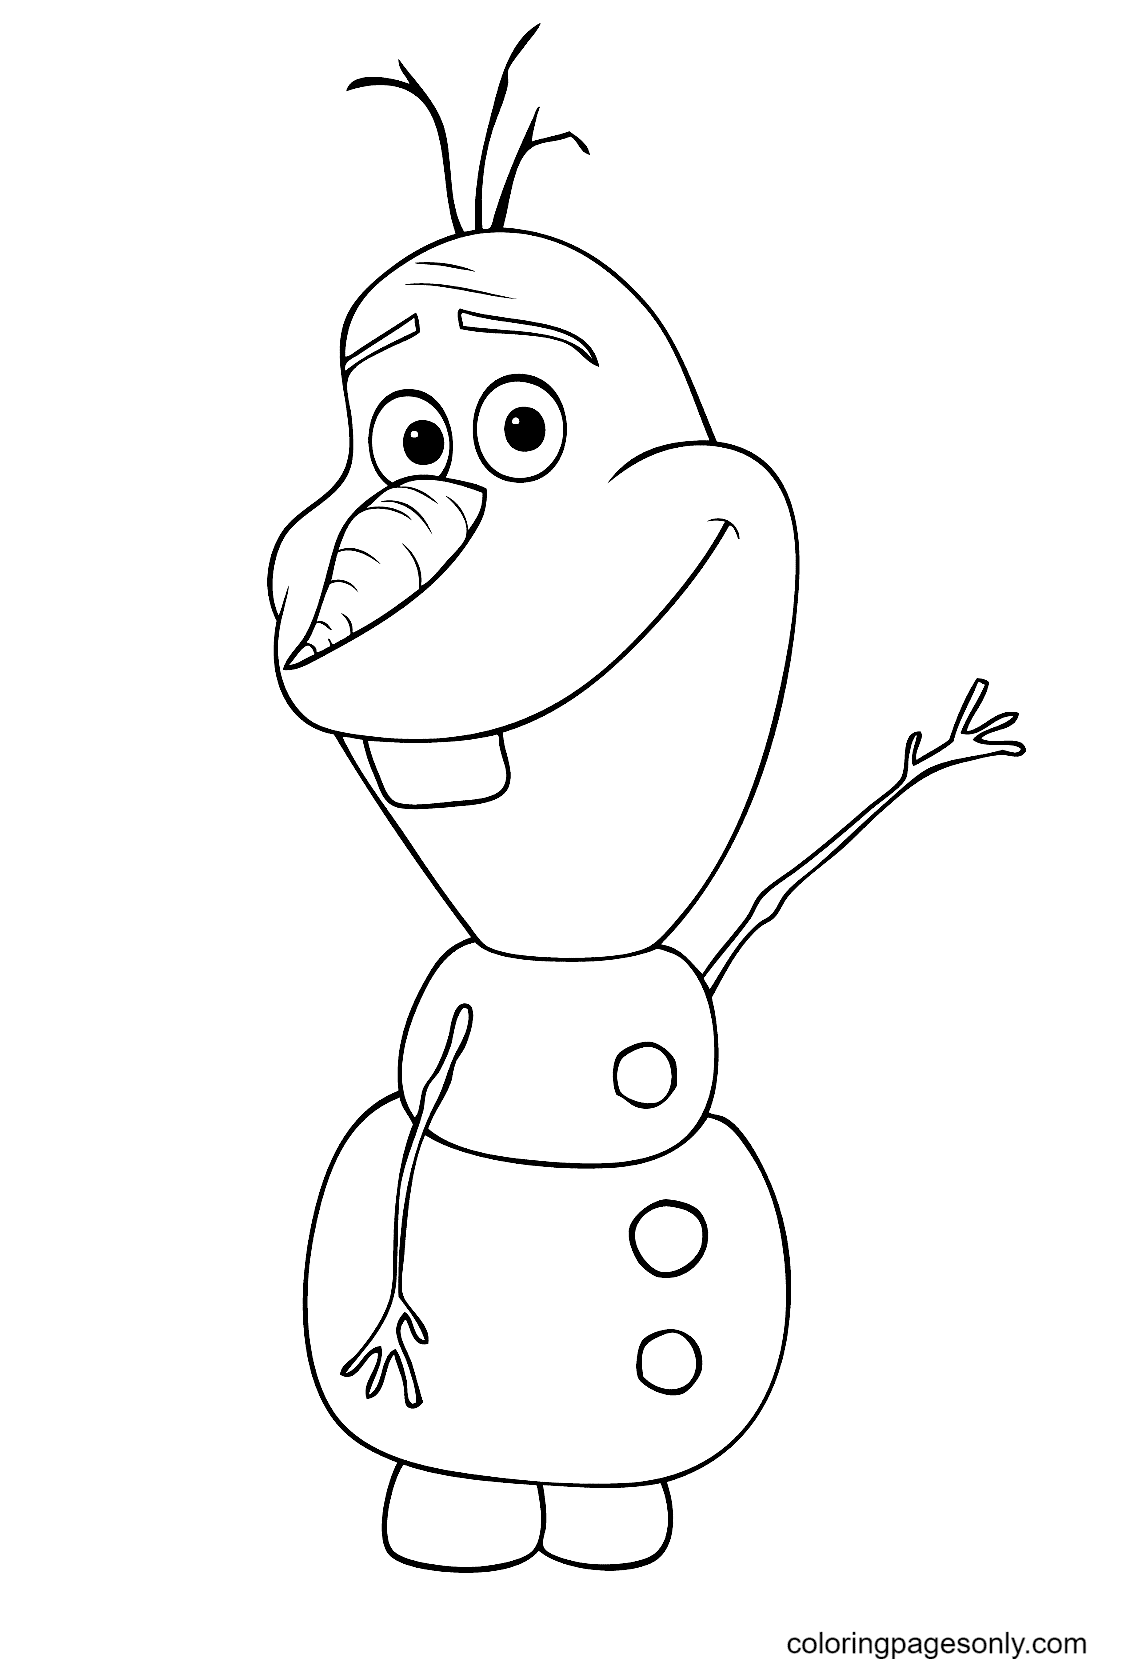 Olaf mignon d'Olaf